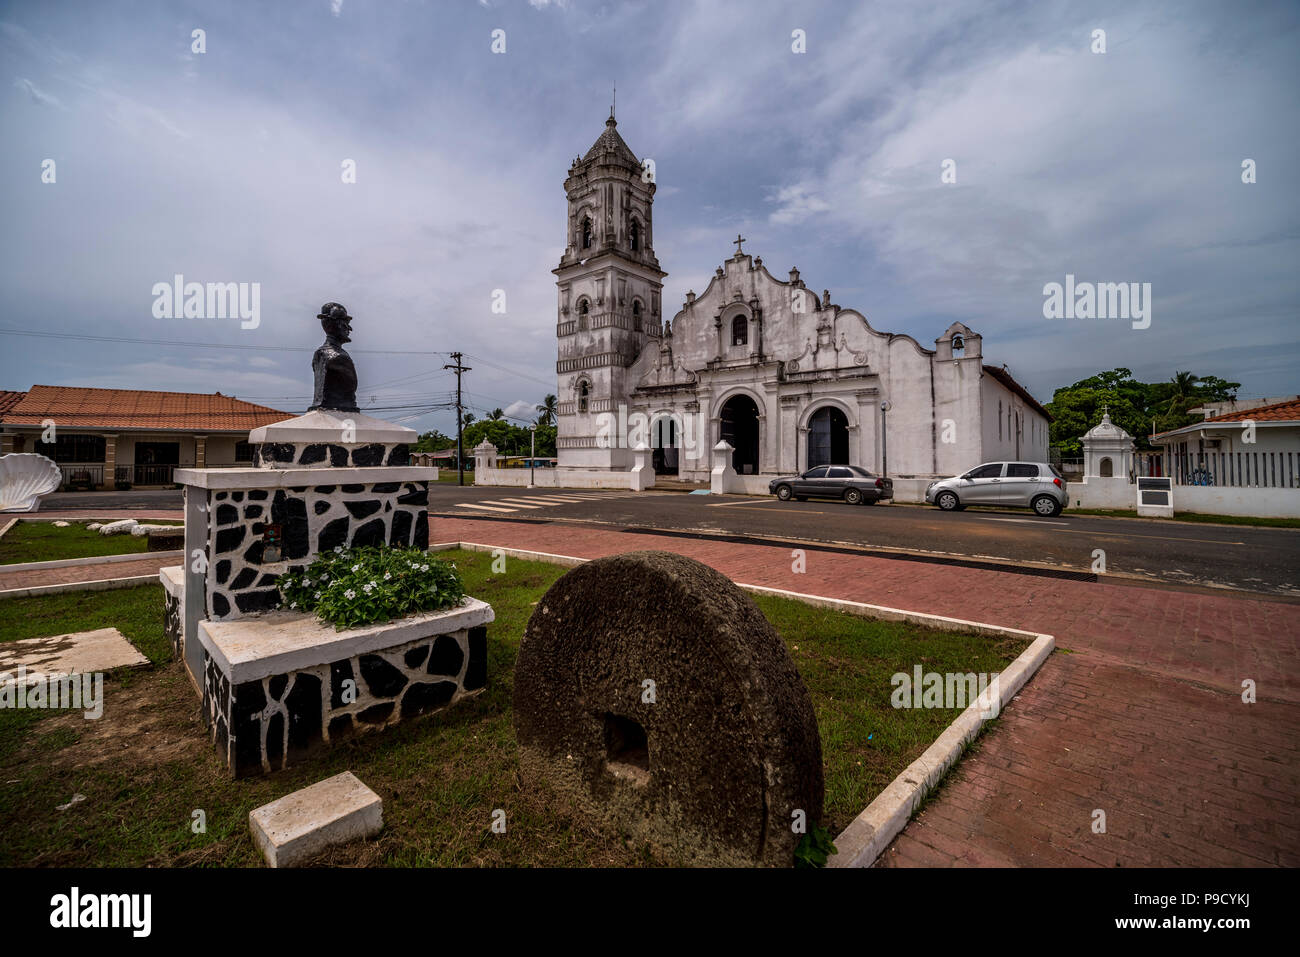 La Basílica menor de Santiago Apóstol de Natá in Panama Foto Stock